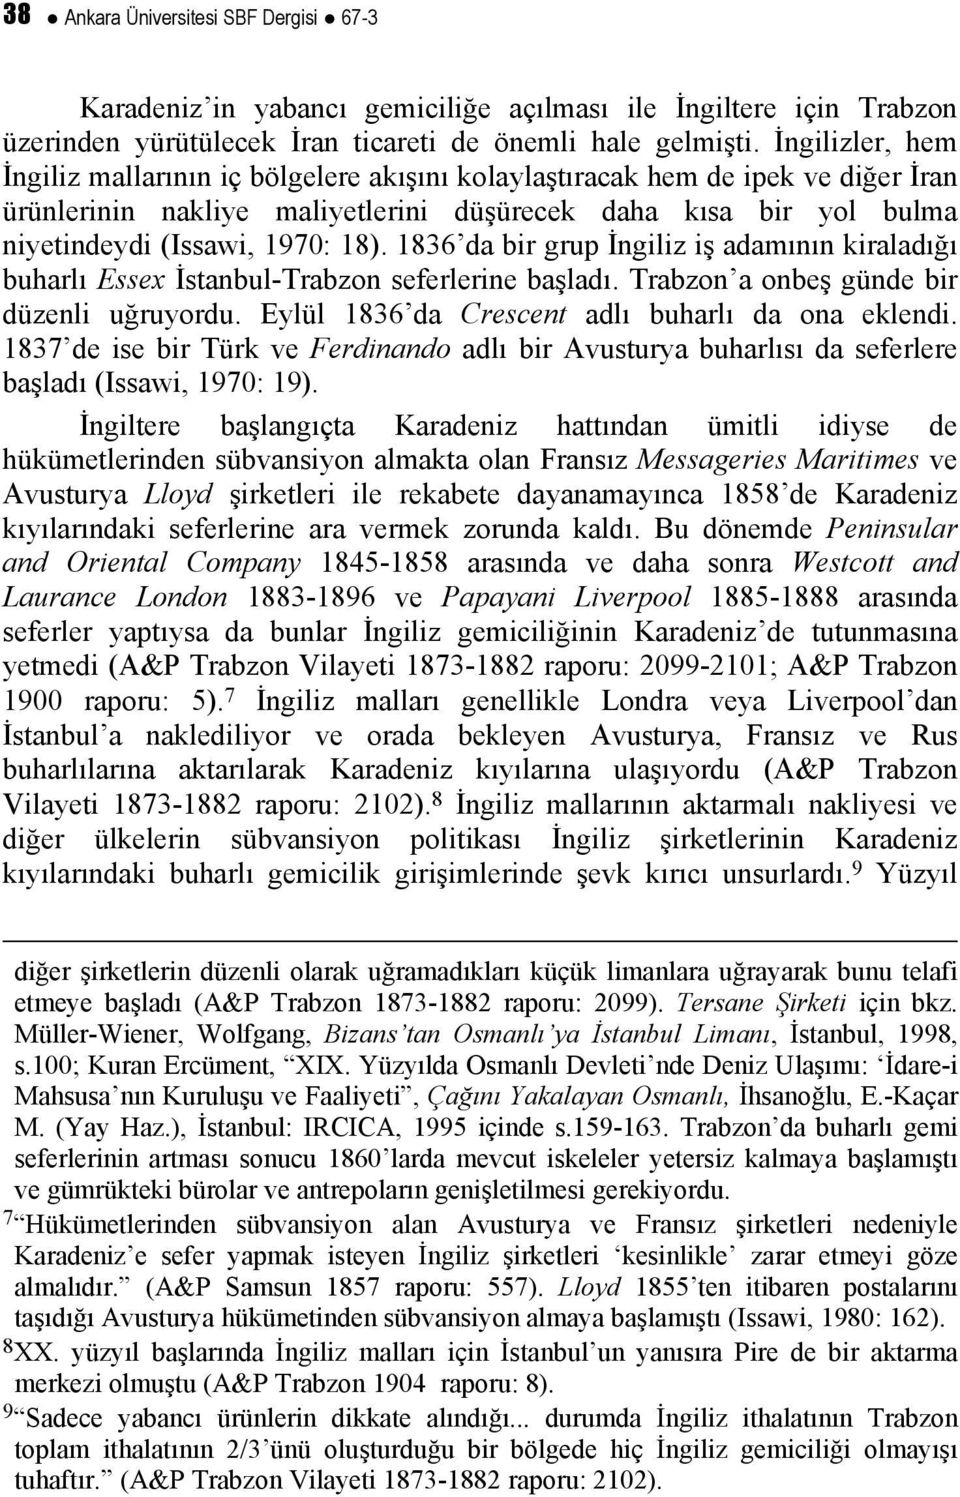 1836 da bir grup İngiliz iş adamının kiraladığı buharlı Essex İstanbul-Trabzon seferlerine başladı. Trabzon a onbeş günde bir düzenli uğruyordu. Eylül 1836 da Crescent adlı buharlı da ona eklendi.